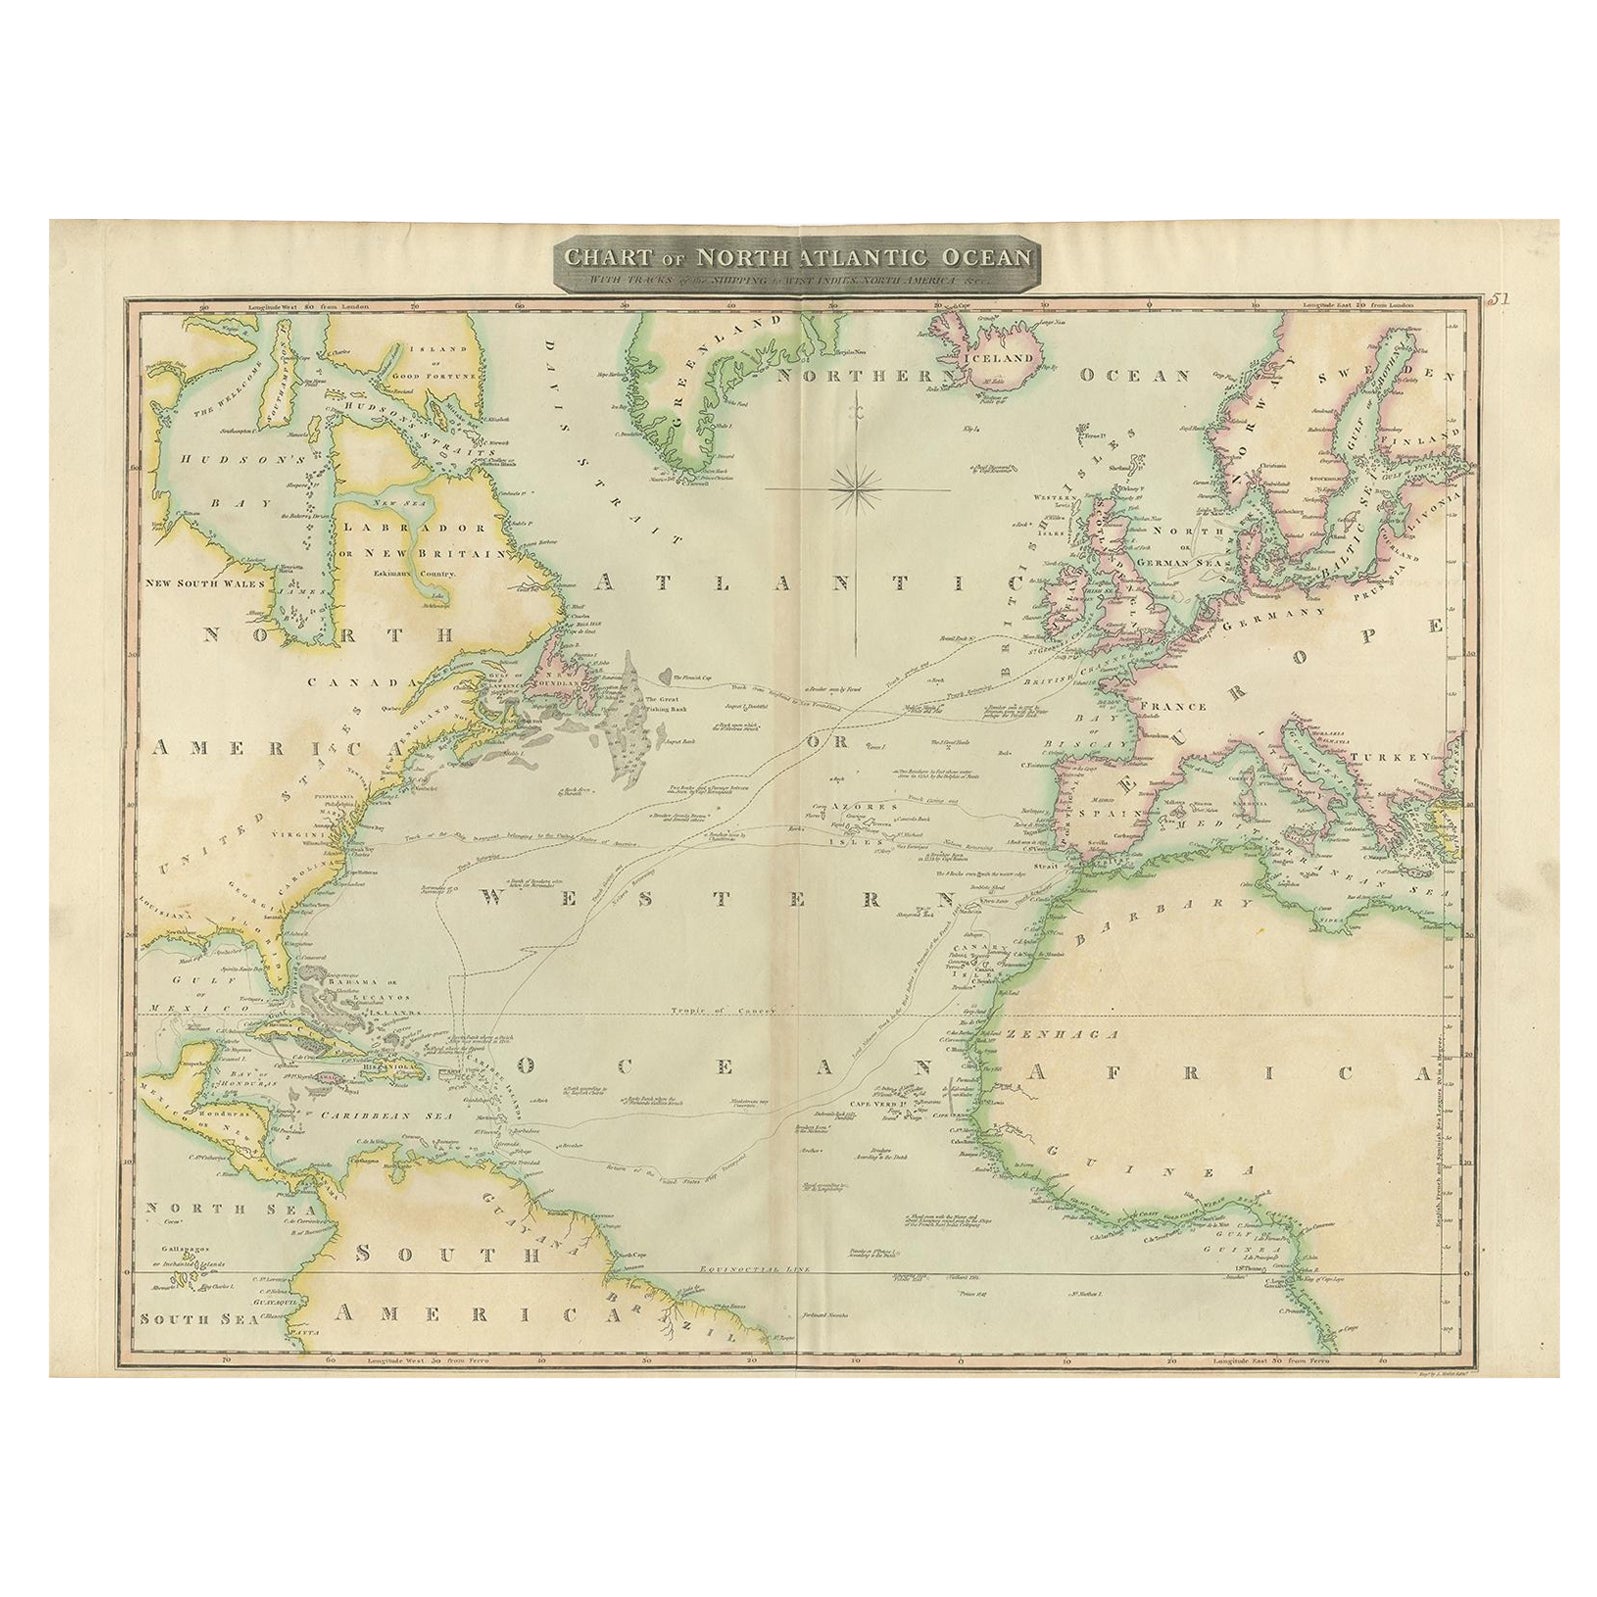 Interessante Karte des Atlantic mit Nelsons und Handelsrouten, 1817